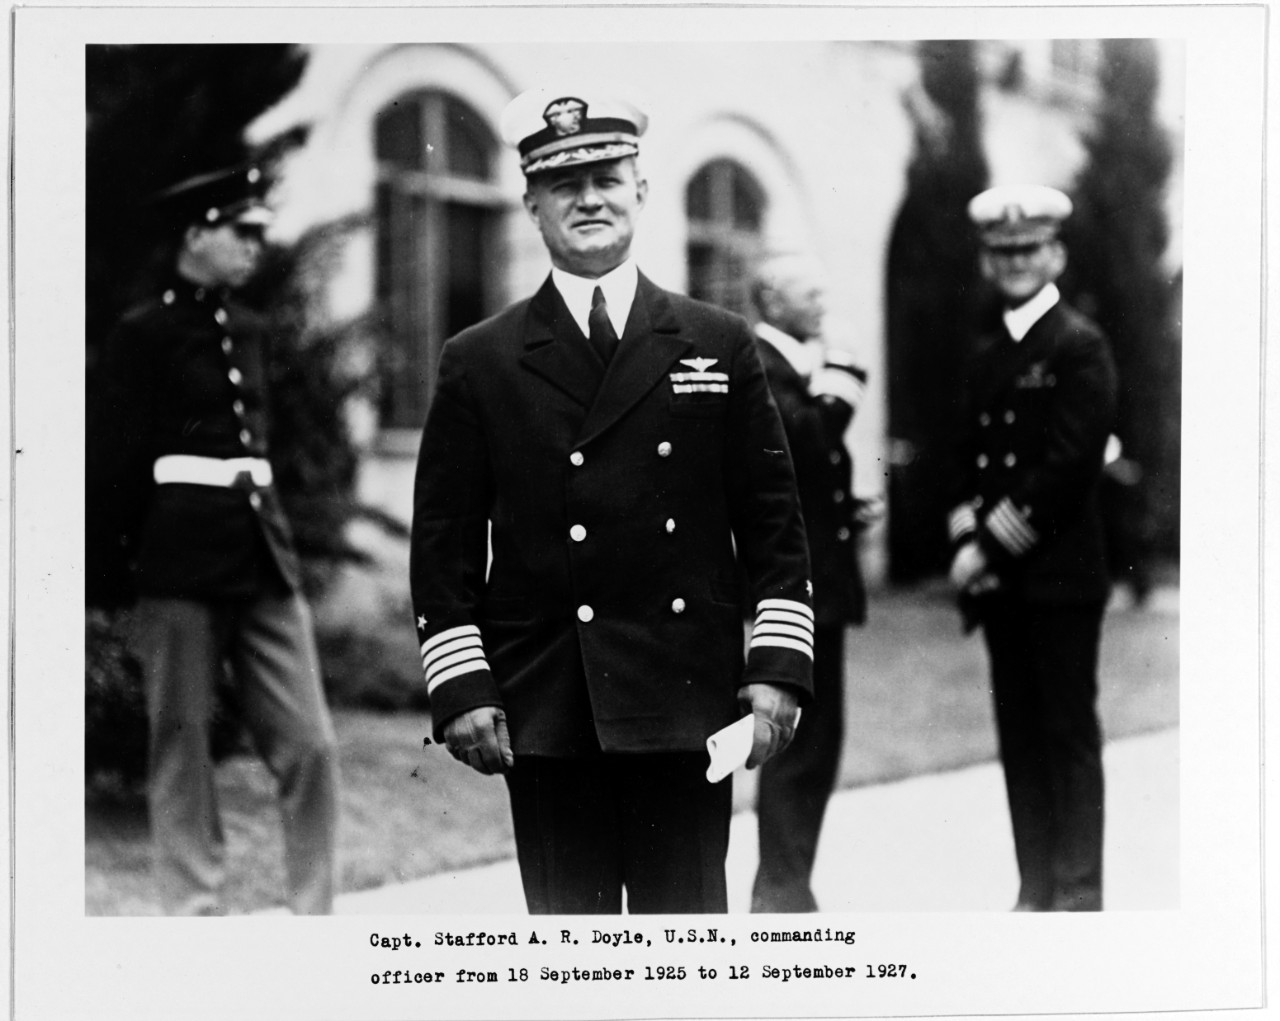 Captain Stafford Doyle, USN